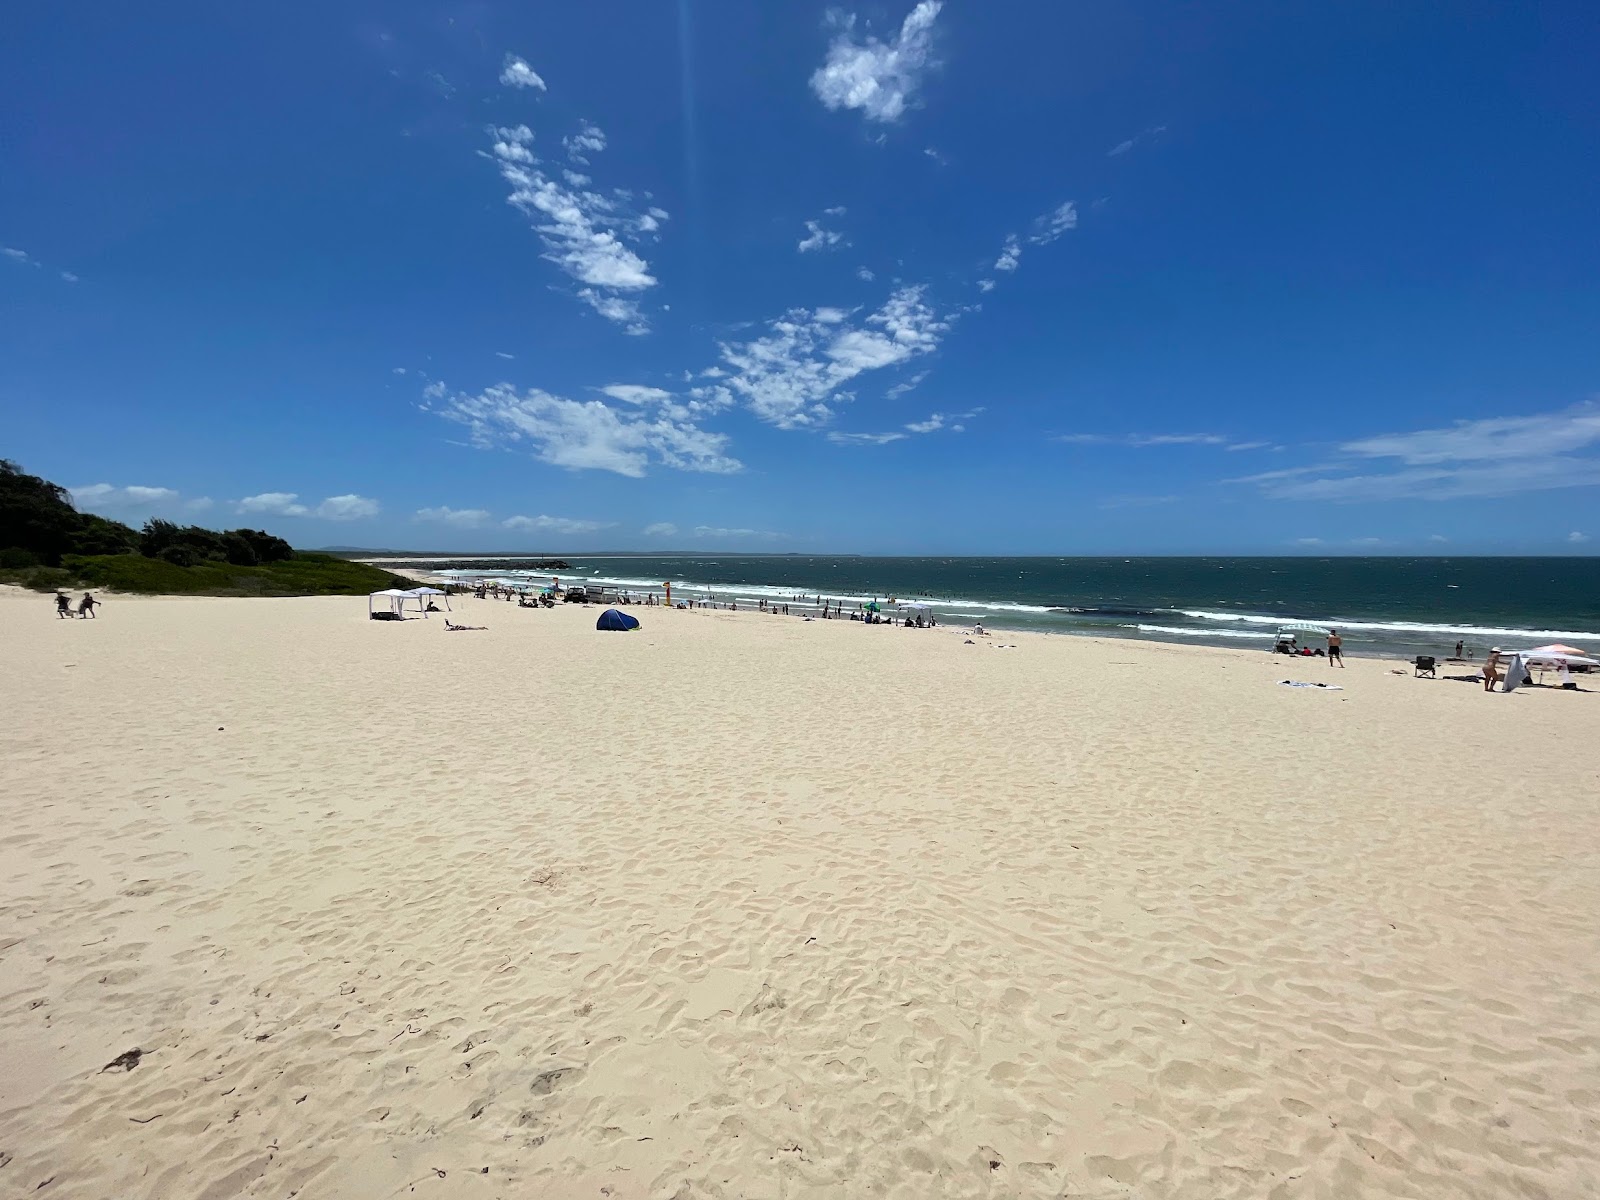 Zdjęcie Forster Beach z powierzchnią jasny, drobny piasek